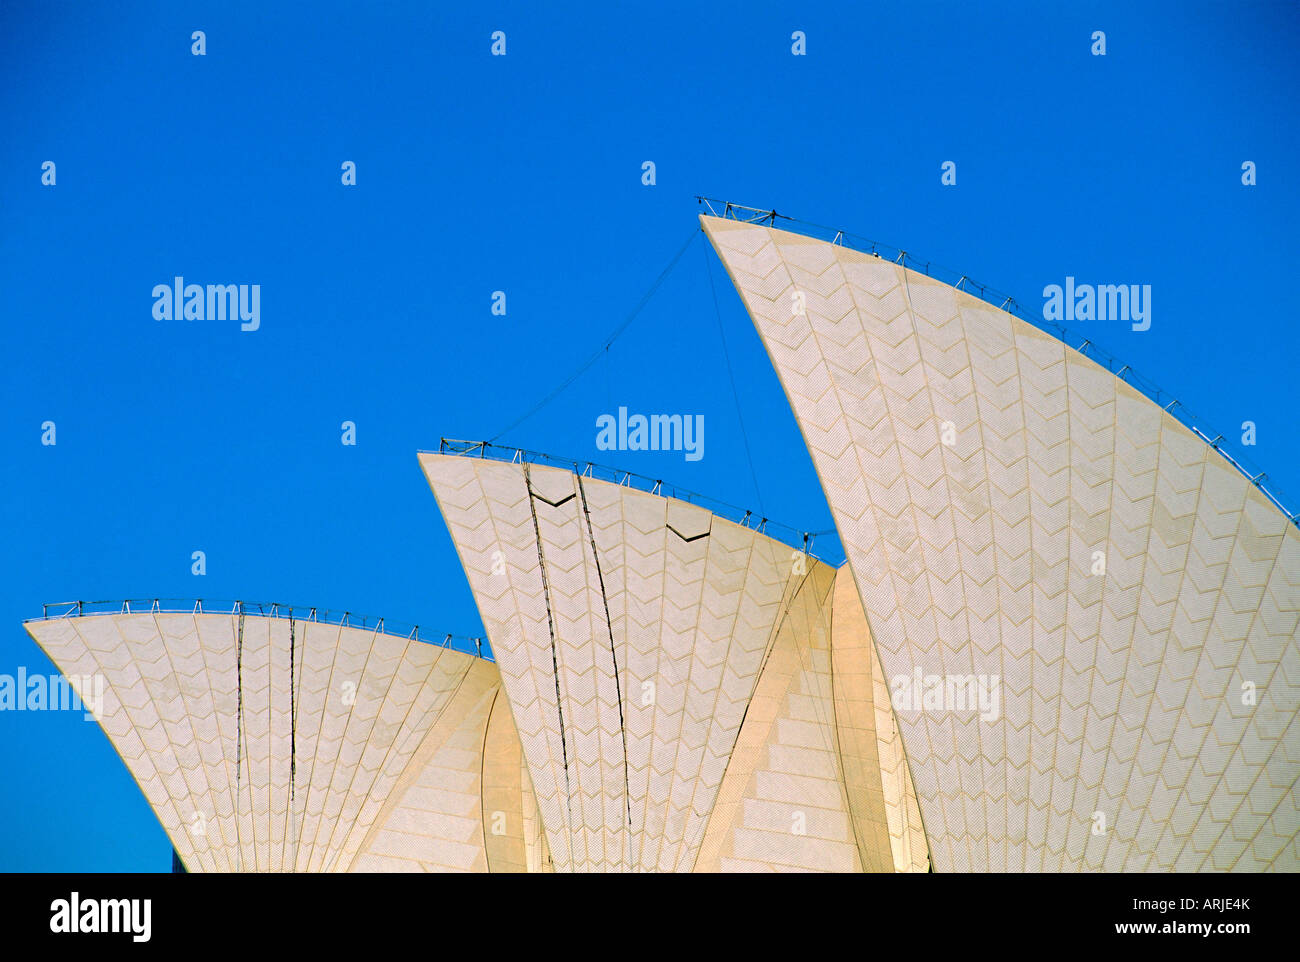 L'Opéra de Sydney, Sydney, New South Wales, Australia Banque D'Images